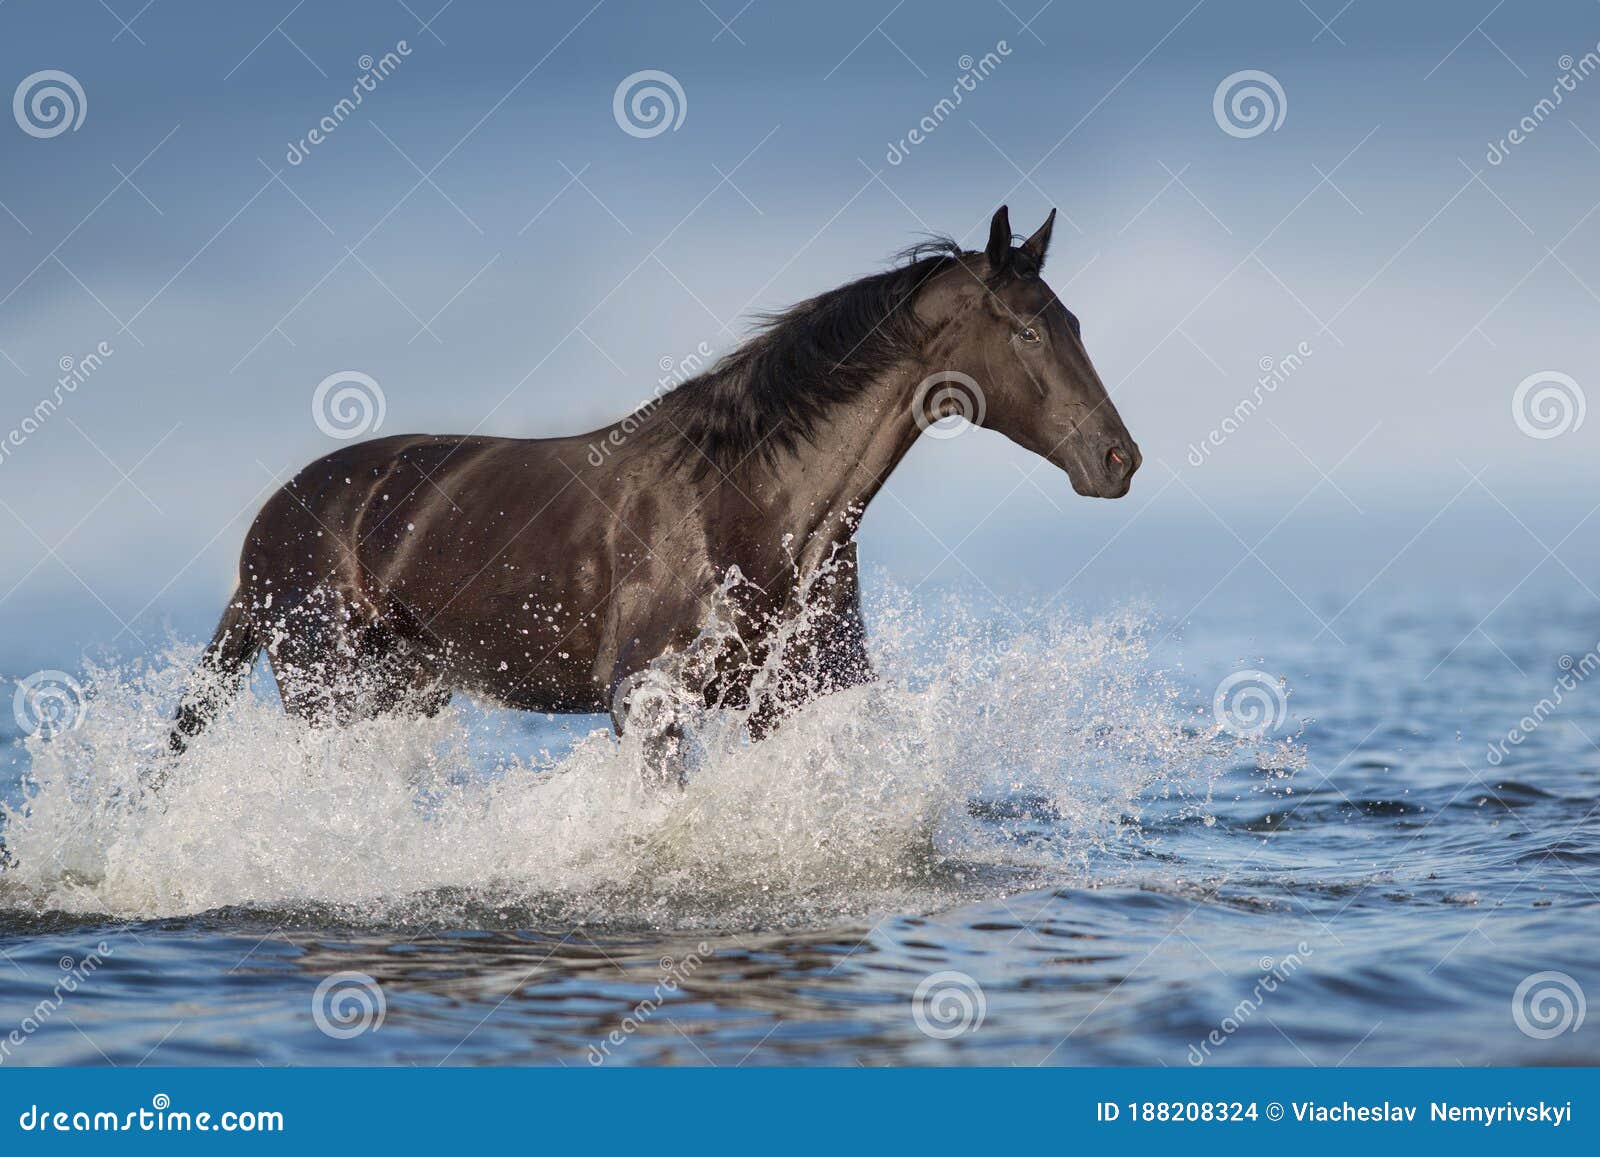 Черная лошадь с крыльями пляж море животное чашка кружка подставка напиток стол пробковая доска 